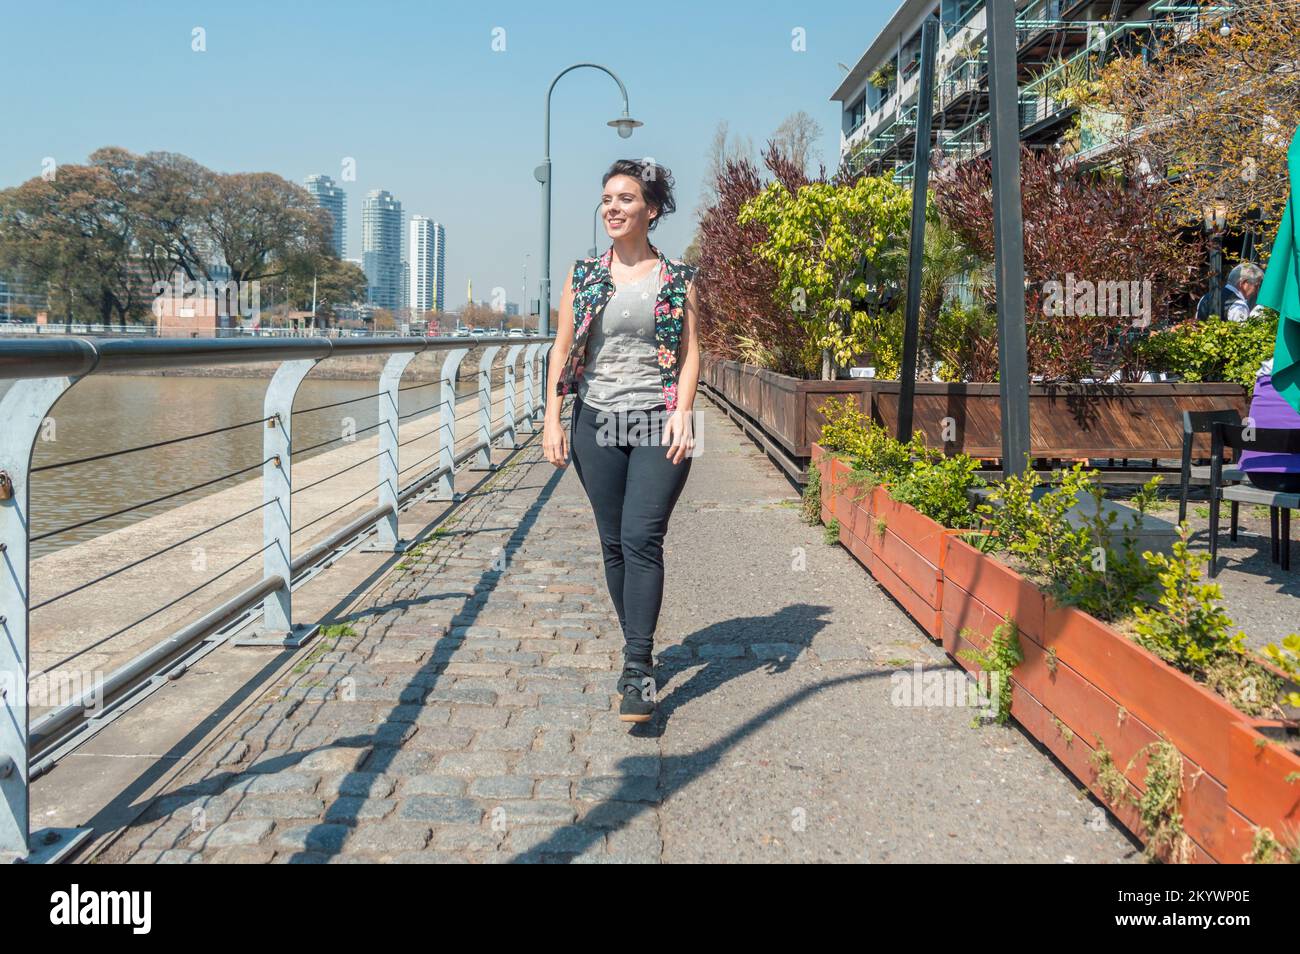 Vue de face femme adulte caucasienne, sourire va heureux de marcher dans la rue, à Puerto Madero Buenos Aires, argentine. Banque D'Images